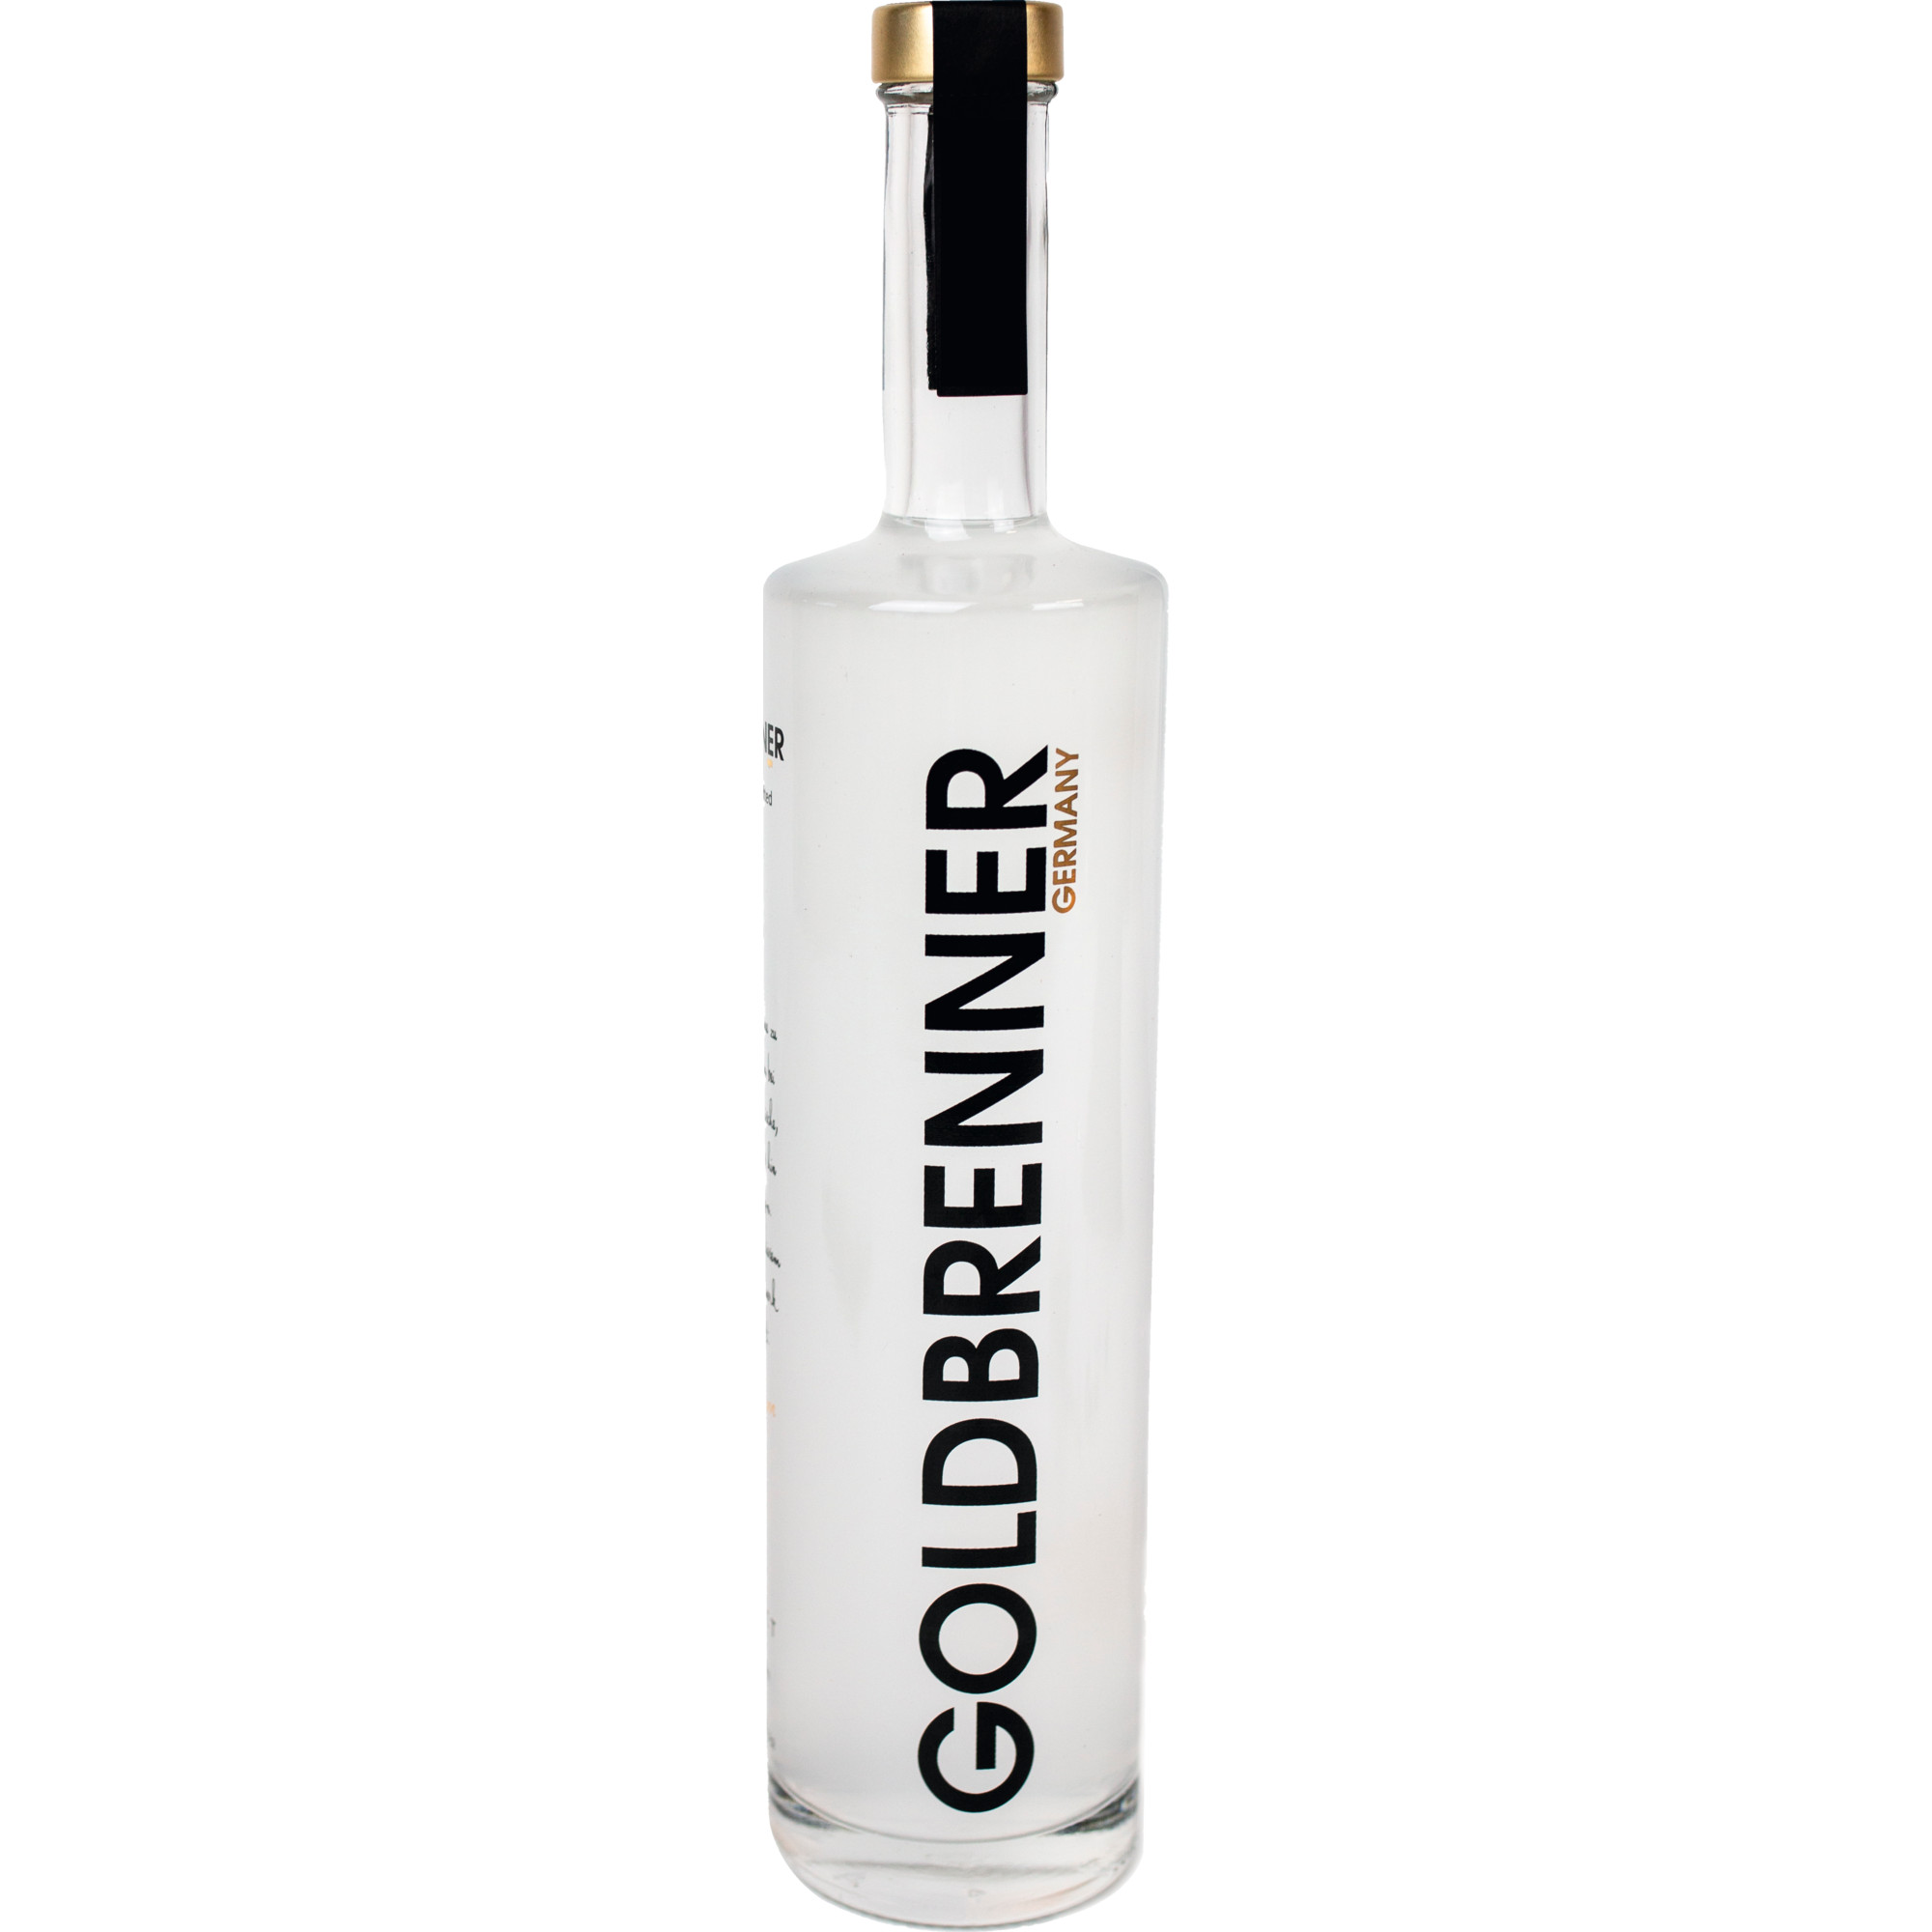 Goldbrenner Kaiserstuhl Dry Gin